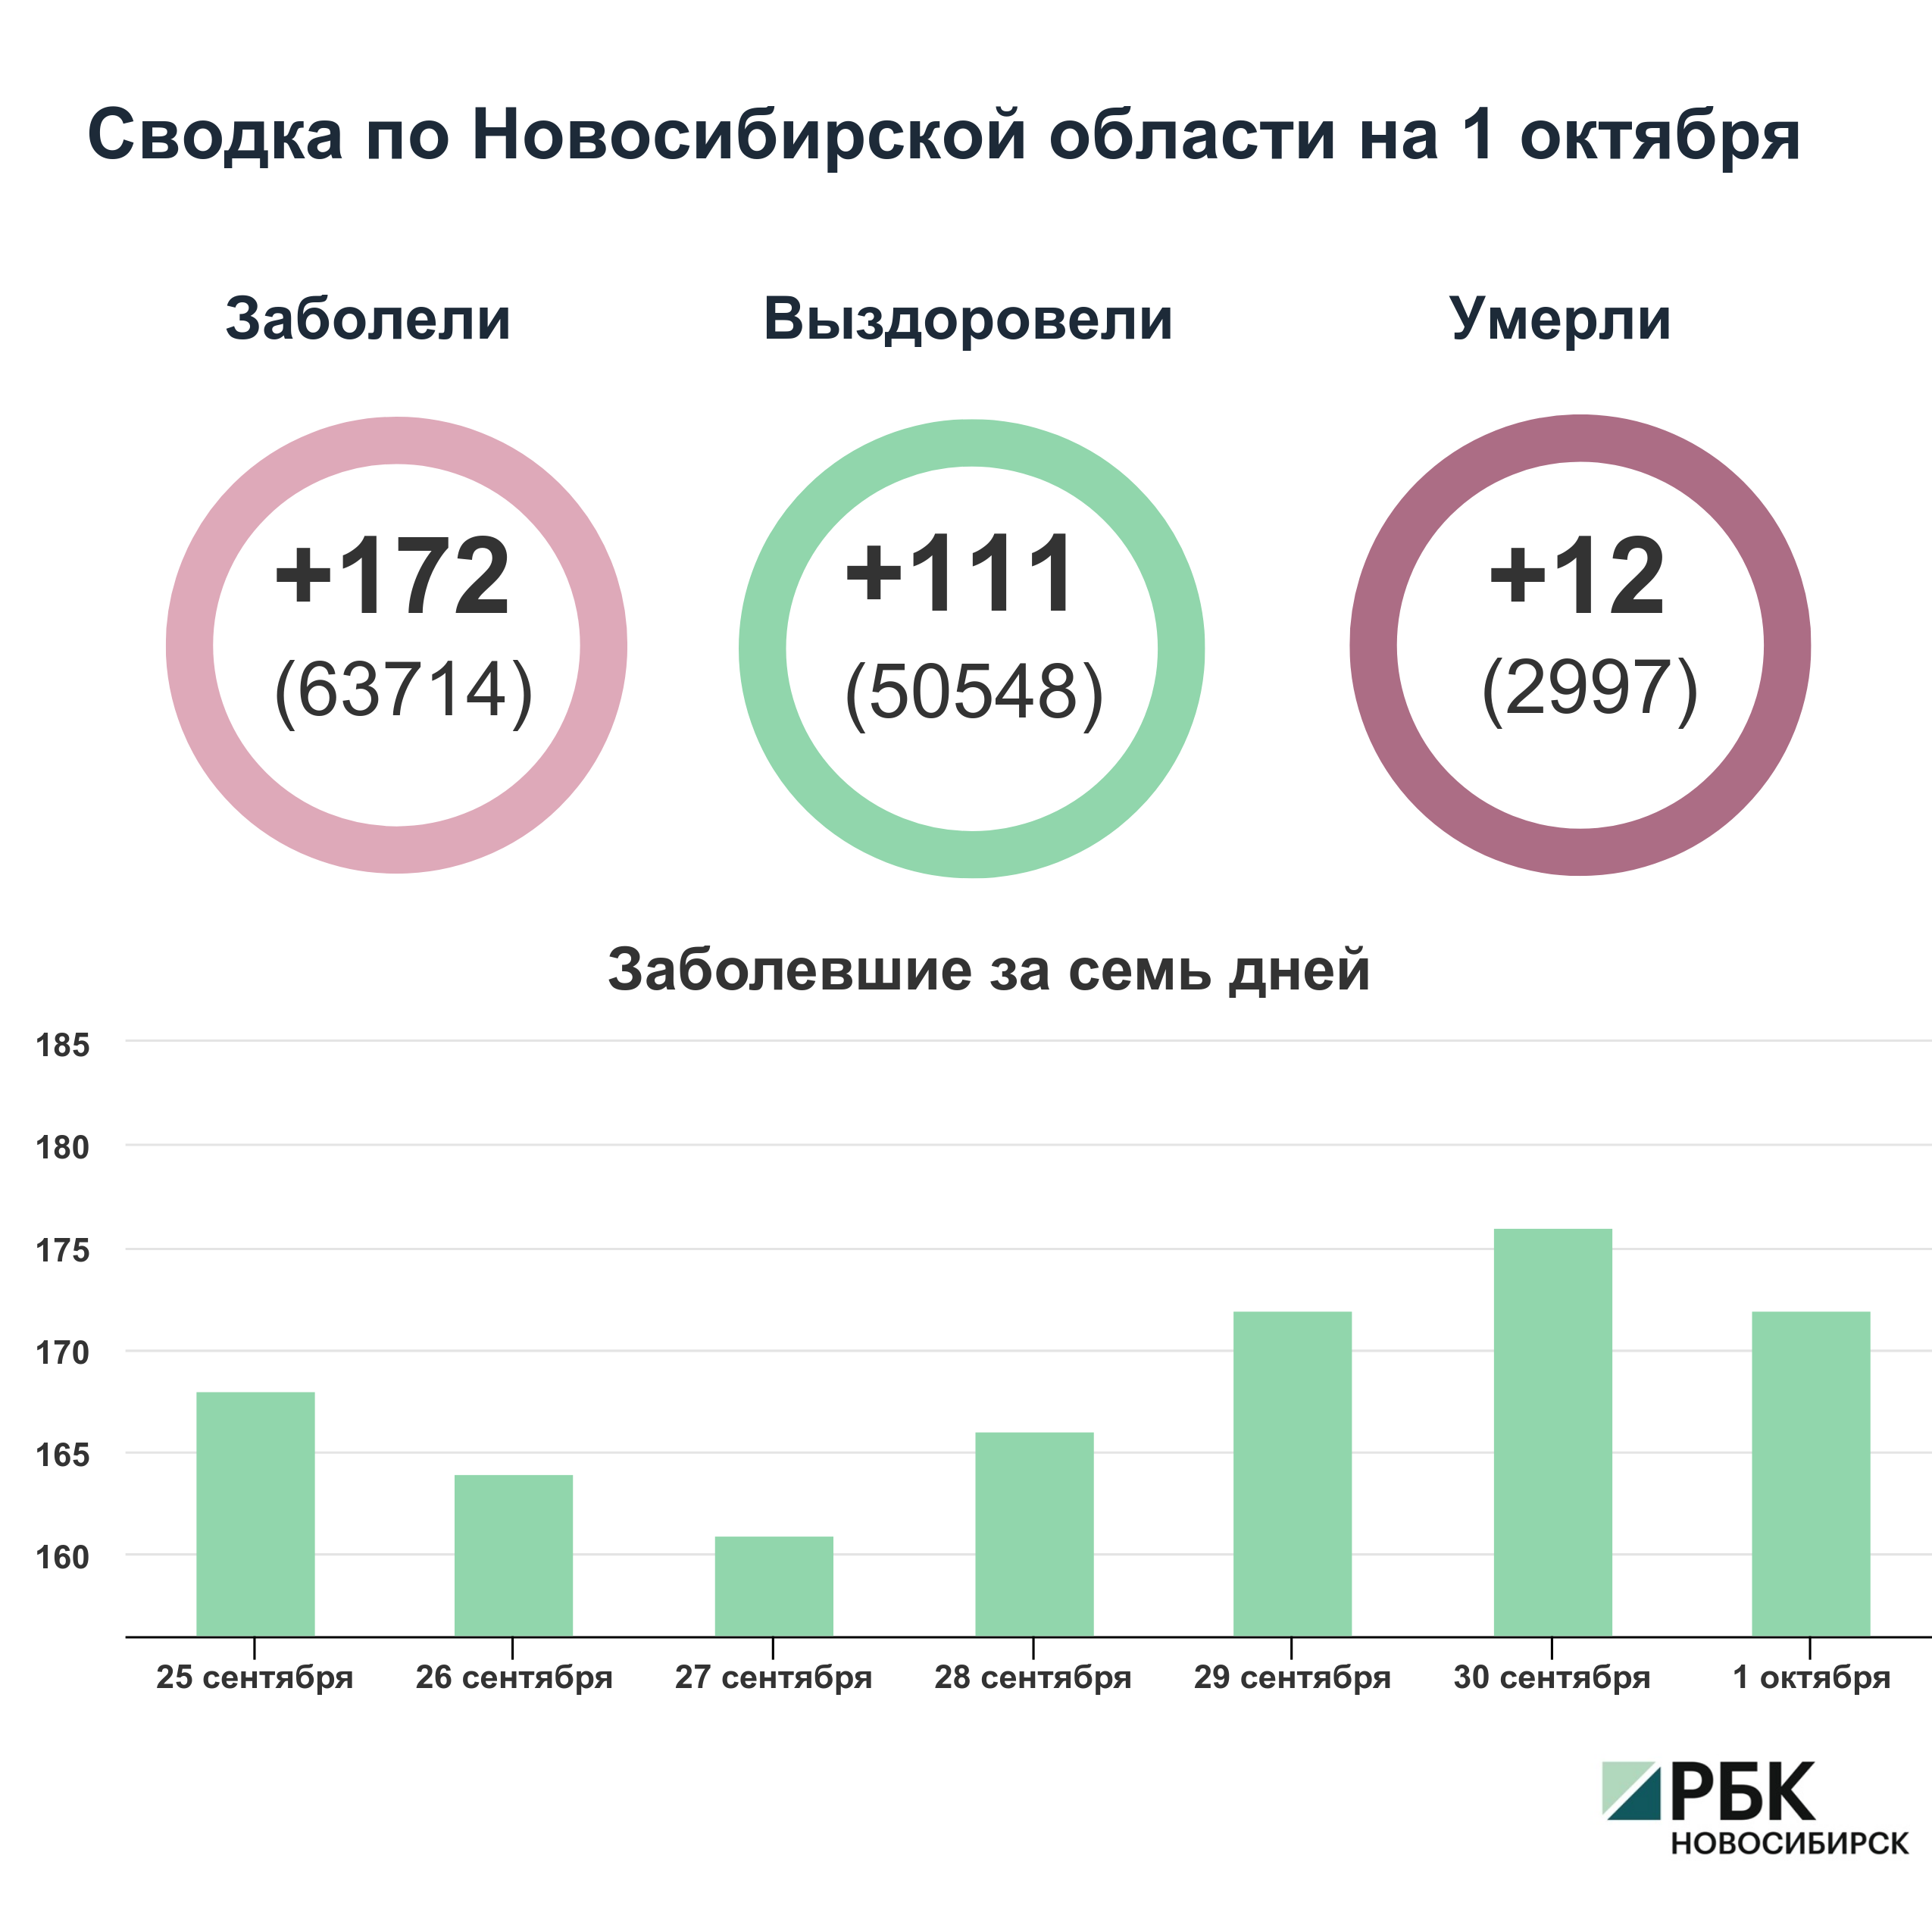 Коронавирус в Новосибирске: сводка на 1 октября